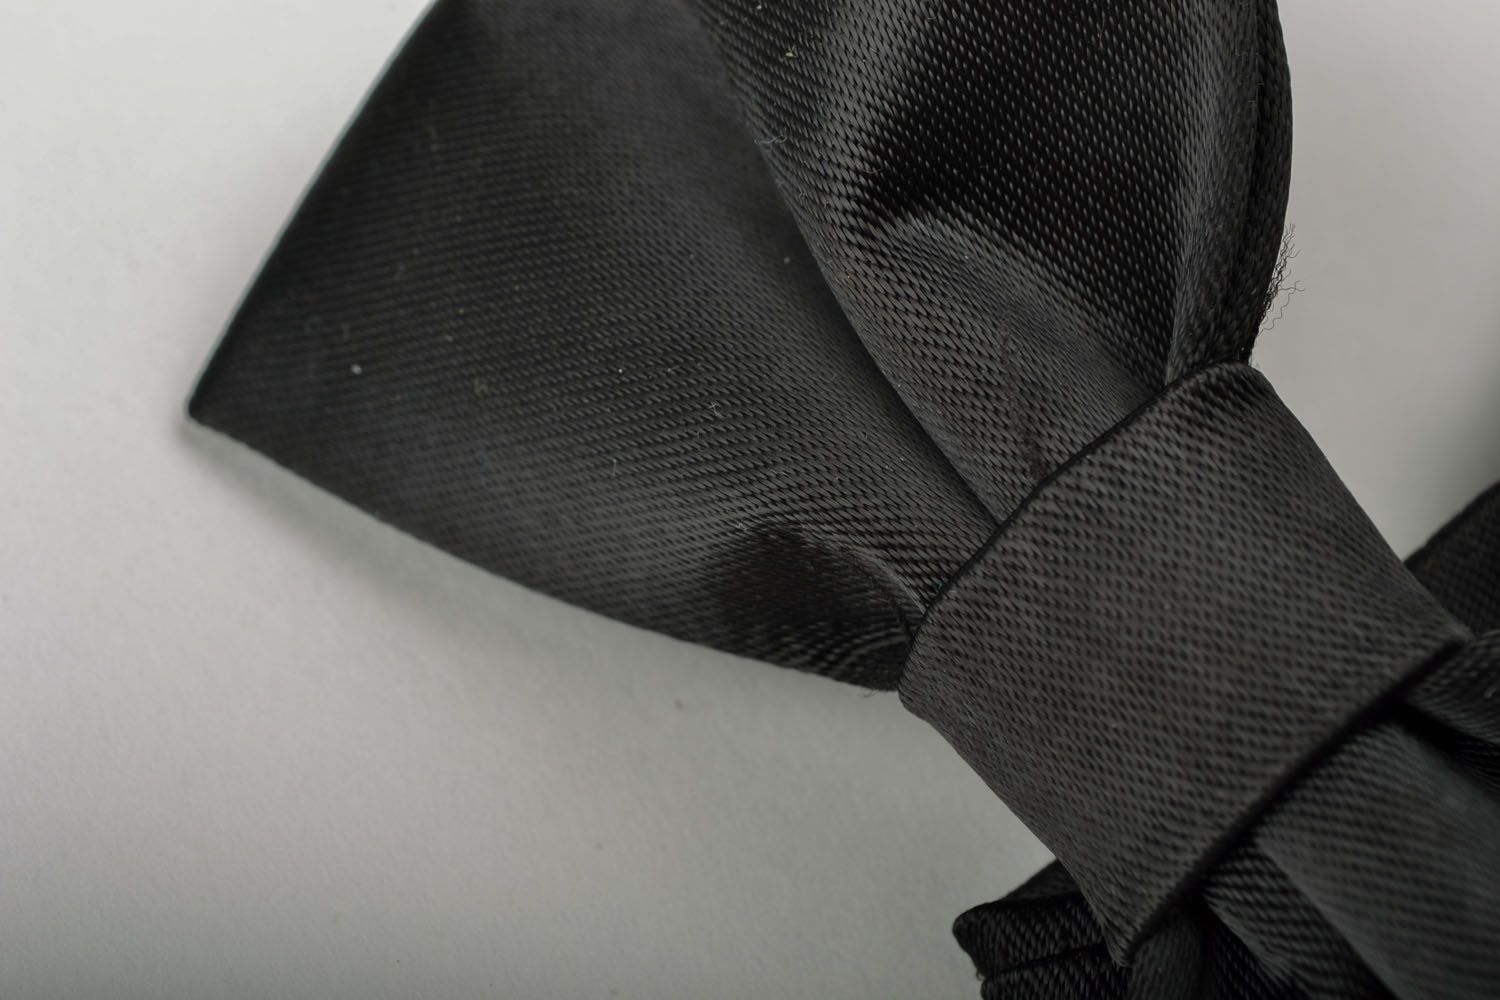 Сorbata de moño negra para el traje foto 3